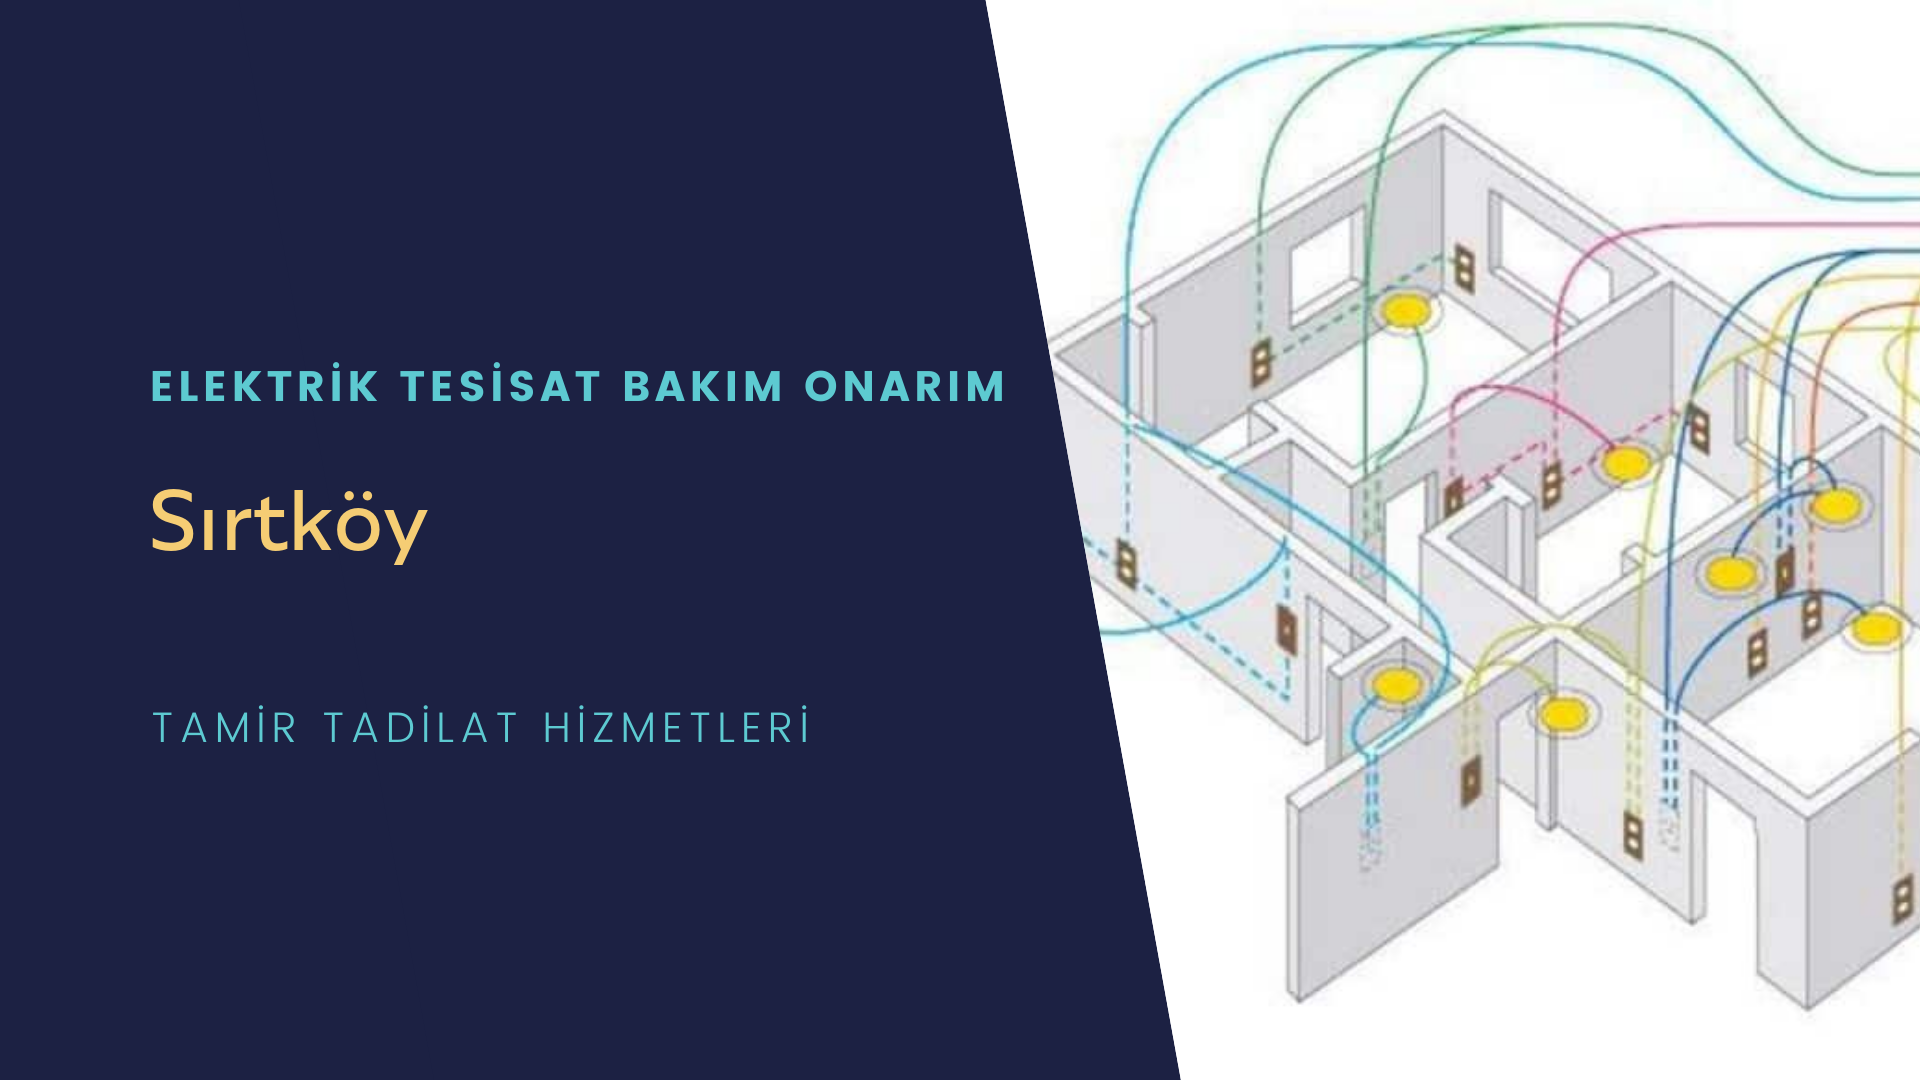 Sırtköy'de elektrik tesisatı ustalarımı arıyorsunuz doğru adrestenizi Sırtköy elektrik tesisatı ustalarımız 7/24 sizlere hizmet vermekten mutluluk duyar.